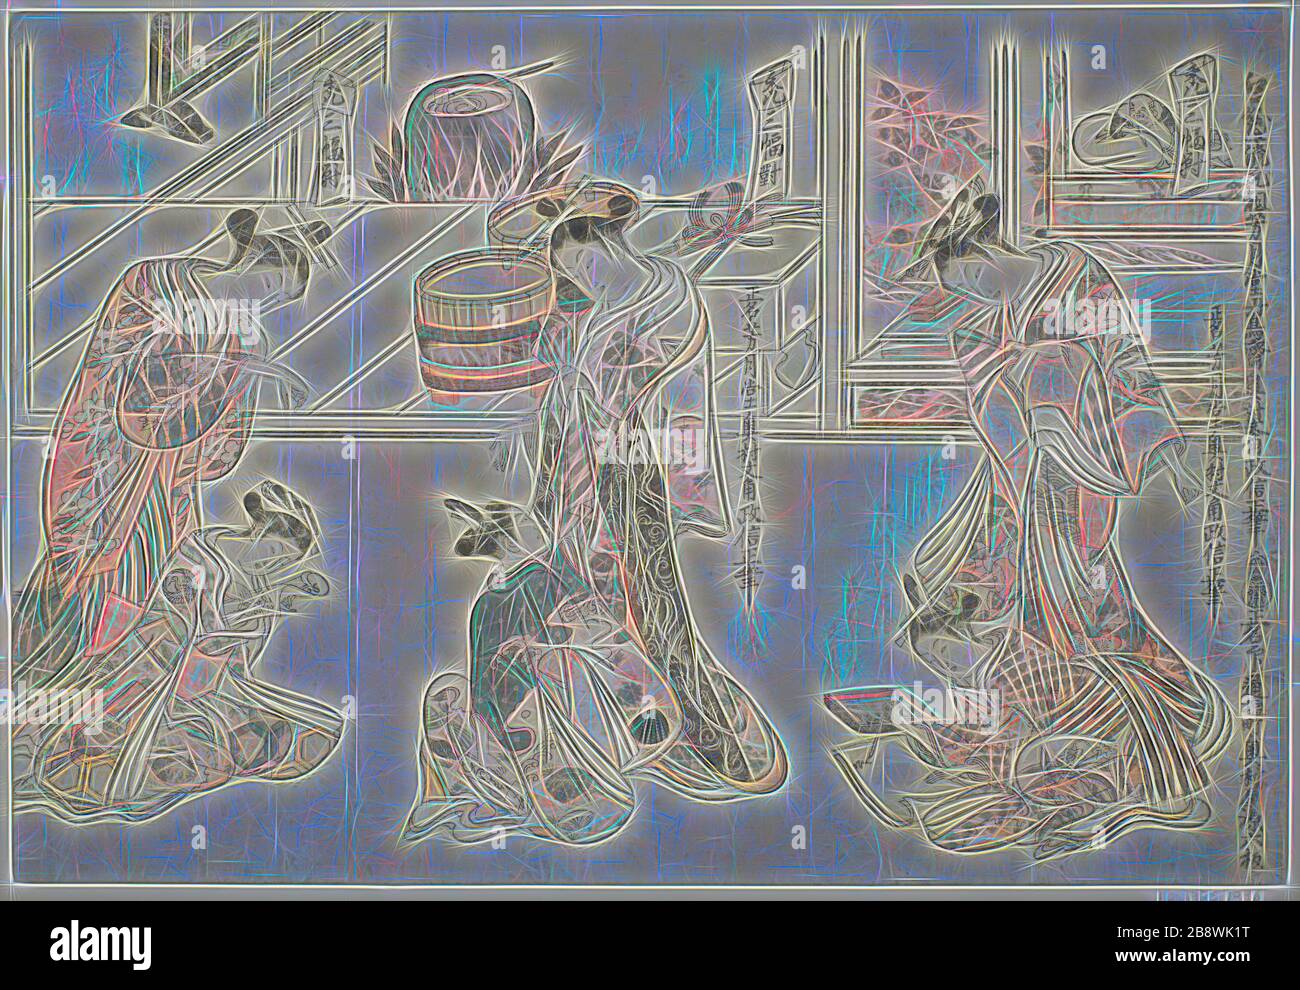 Kinderbetreuer: Ein dreier Satz (Kamuro sanpukutsui), c 1744/51, Okumura Masanobu, Japanisch, 1686-1764, Japan, Farbholzblockdruck, unbeschnittenes Hosoban-Triptychon, benizuri-e, 29,9 x 43,9 cm (11 3/4 x 17 Zoll), von Gibon neu vorgestellt, Design von warmem, fröhlichem Leuchten von Helligkeit und Lichtstrahlen. Klassische Kunst mit moderner Note neu erfunden. Fotografie, inspiriert vom Futurismus, die dynamische Energie moderner Technologie, Bewegung, Geschwindigkeit und Kultur revolutionieren. Stockfoto